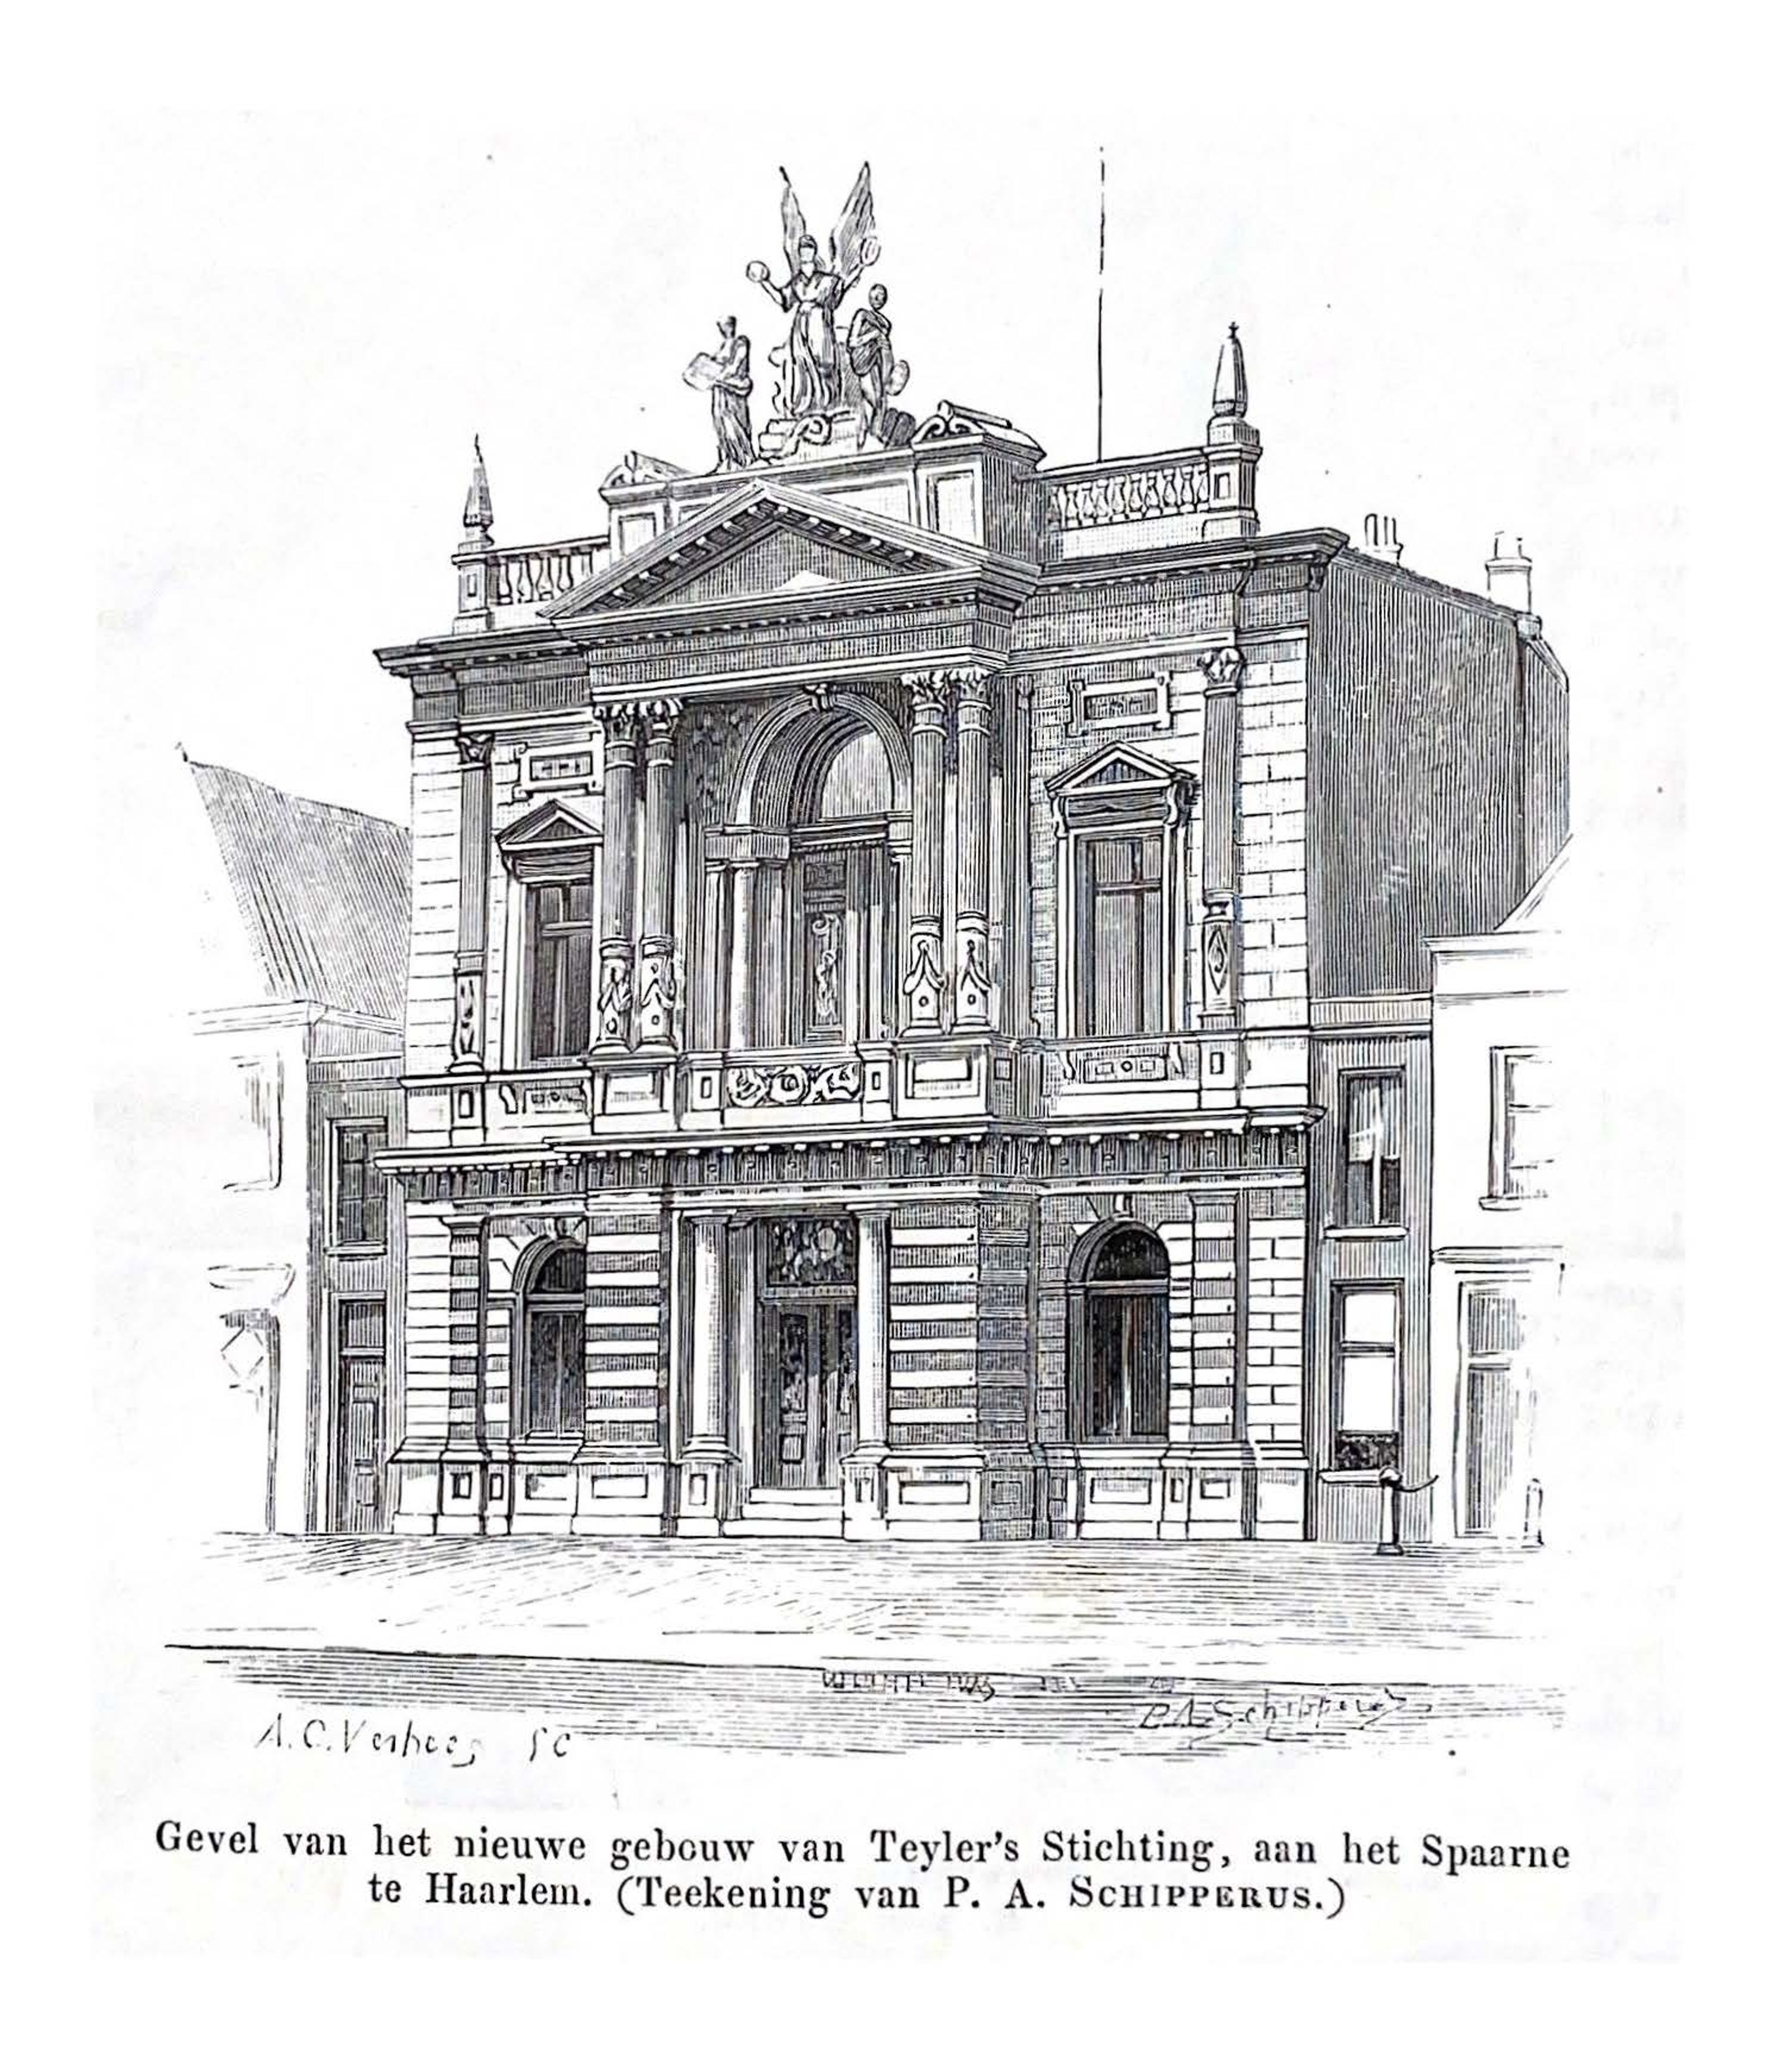 Piet Schipperus, 'Gevel van het nieuwe gebouw van Teyler's Stichting, aan het Spaarne te Haarlem', Eigen Haard 1885, no. 10.